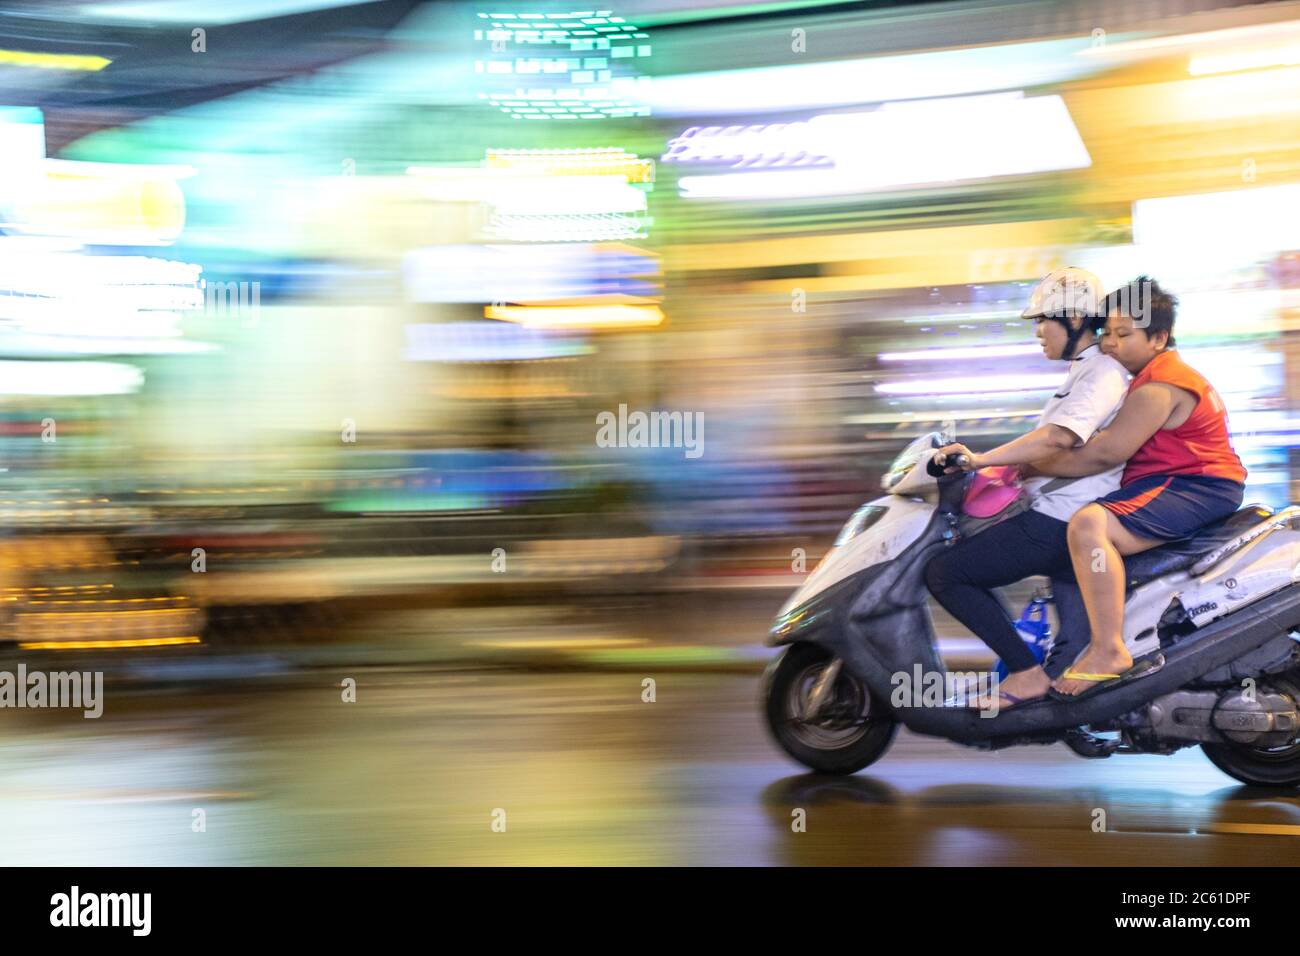 Ein rasender Motorrad in einem asiatischen Stadtzentrum Stockfoto